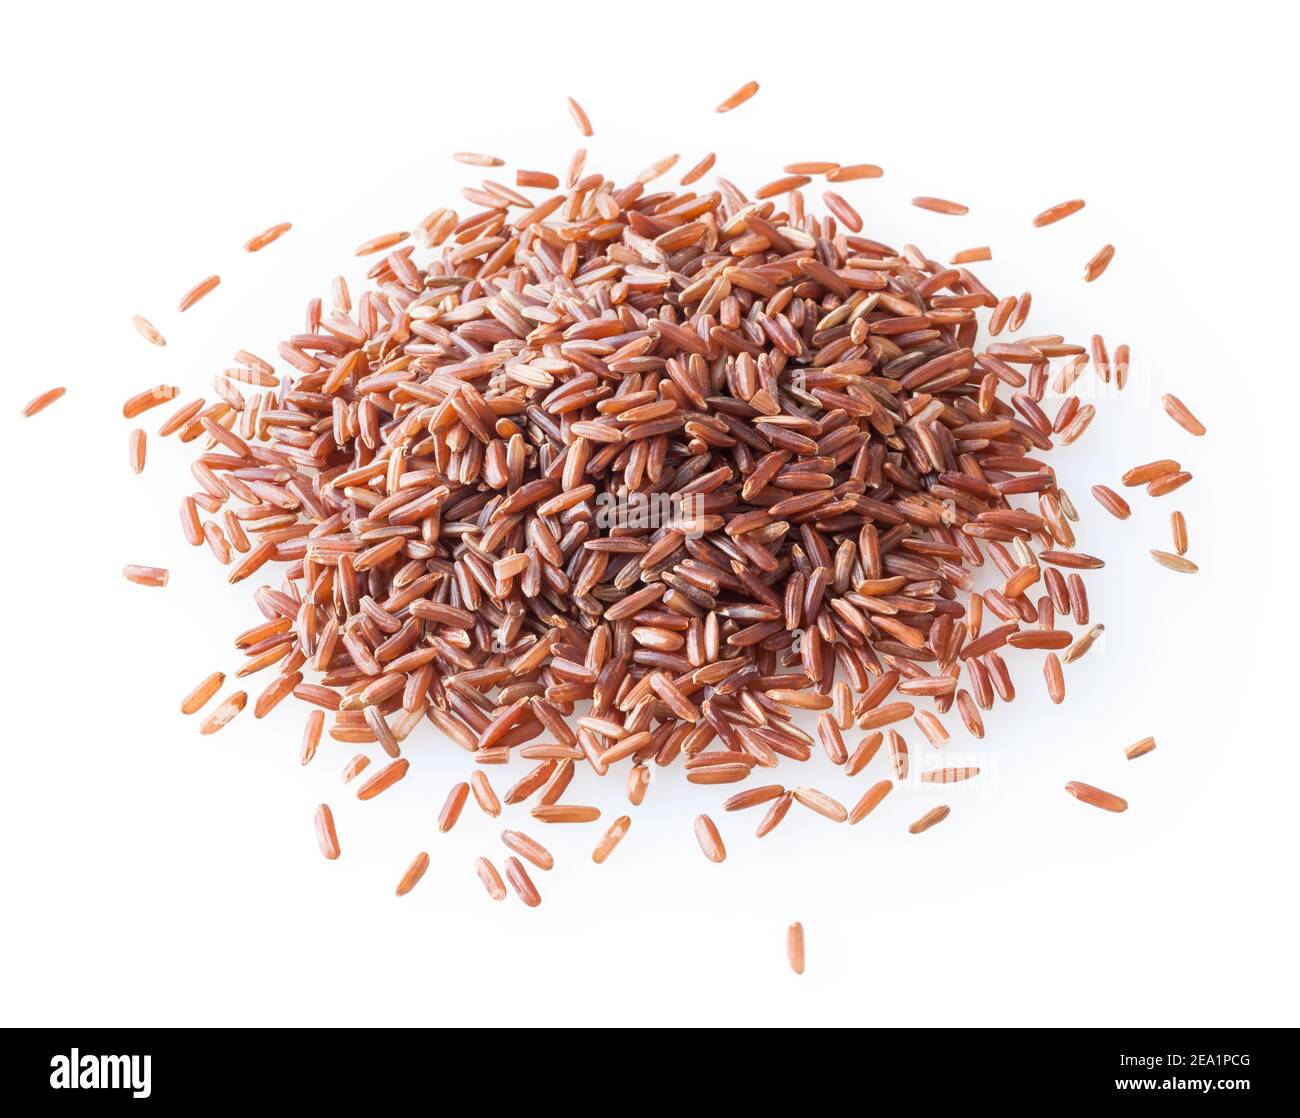 La voie du rêve: Une poignée de grains de riz